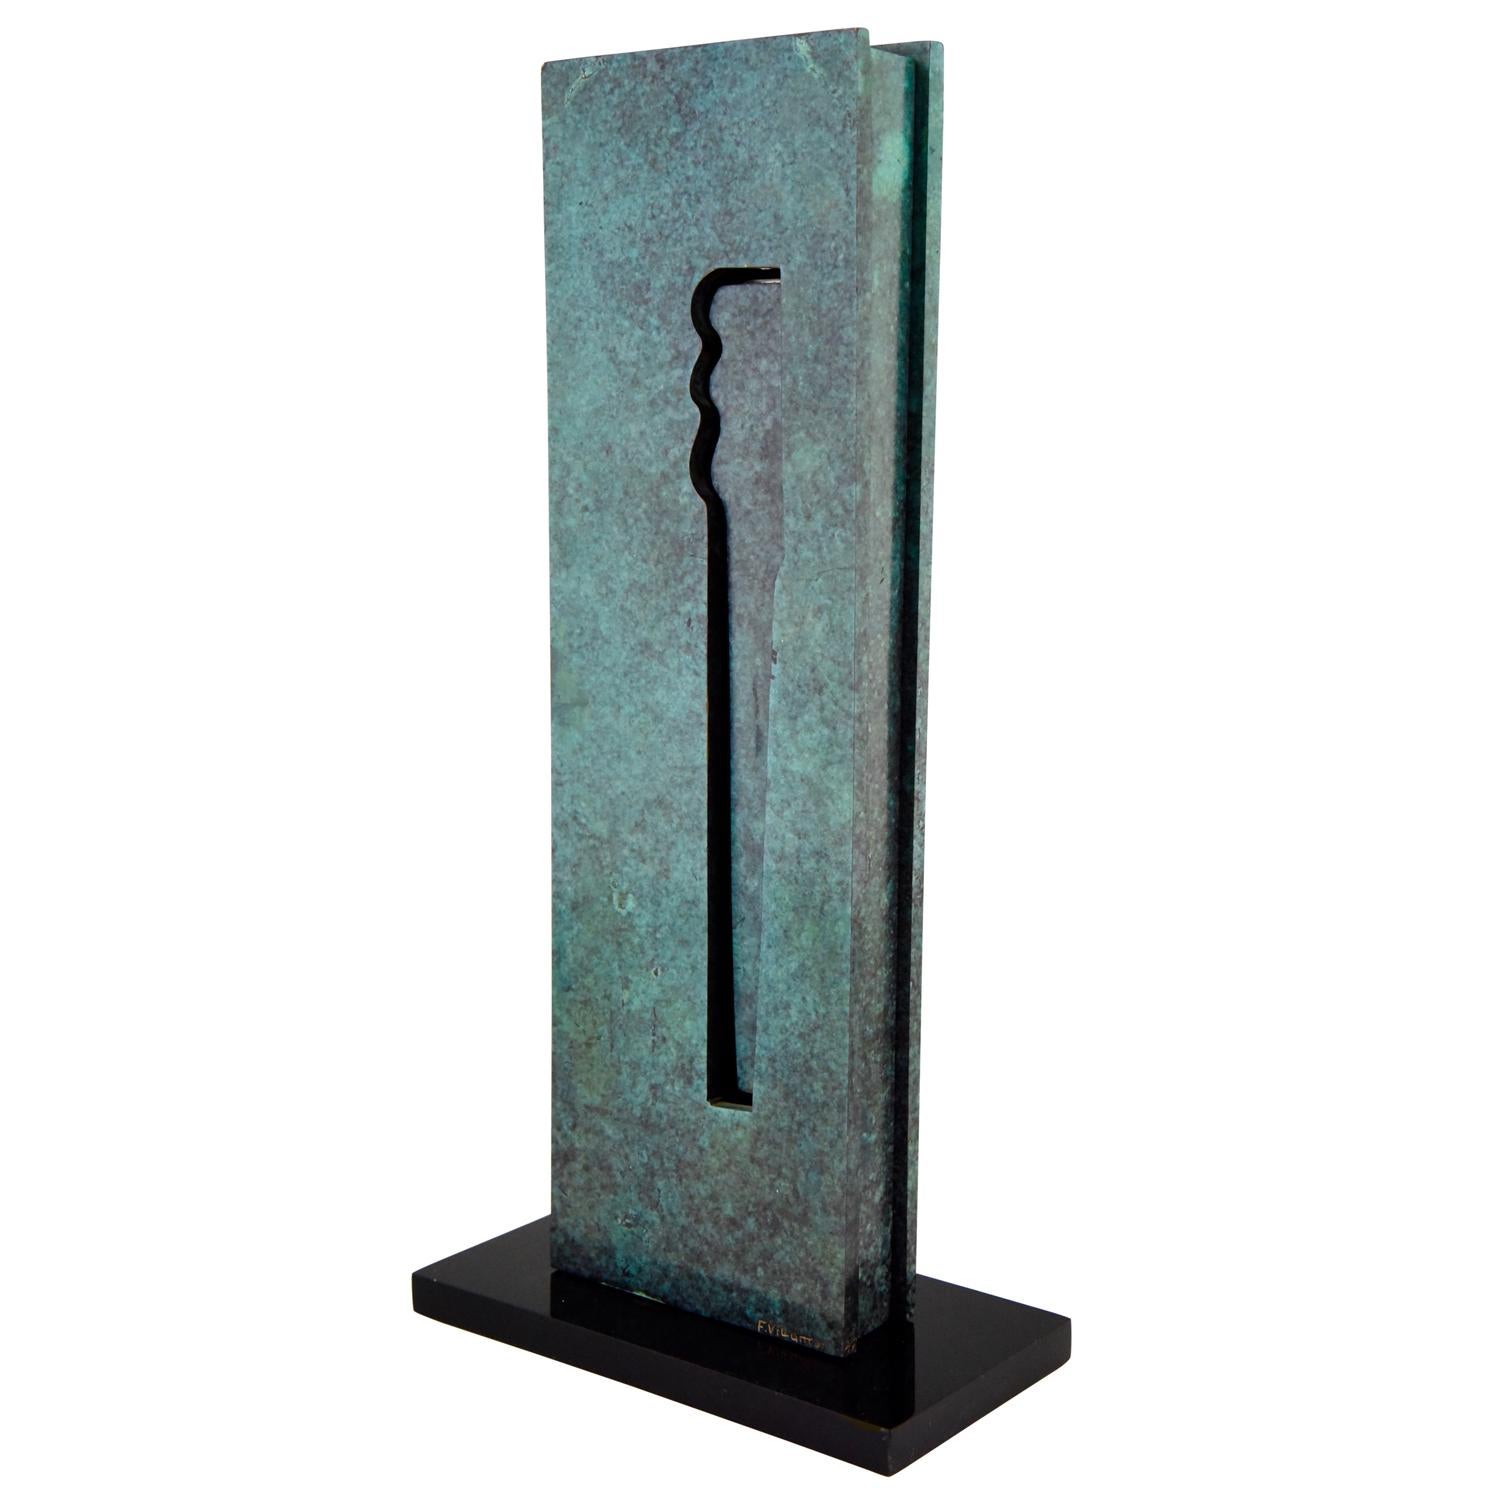 Stilvolle Mid-Century Modern Bronzeskulptur des 1940 in Spanien geborenen Künstlers Felix Villamor. Dieser Künstler trat 1971 der 